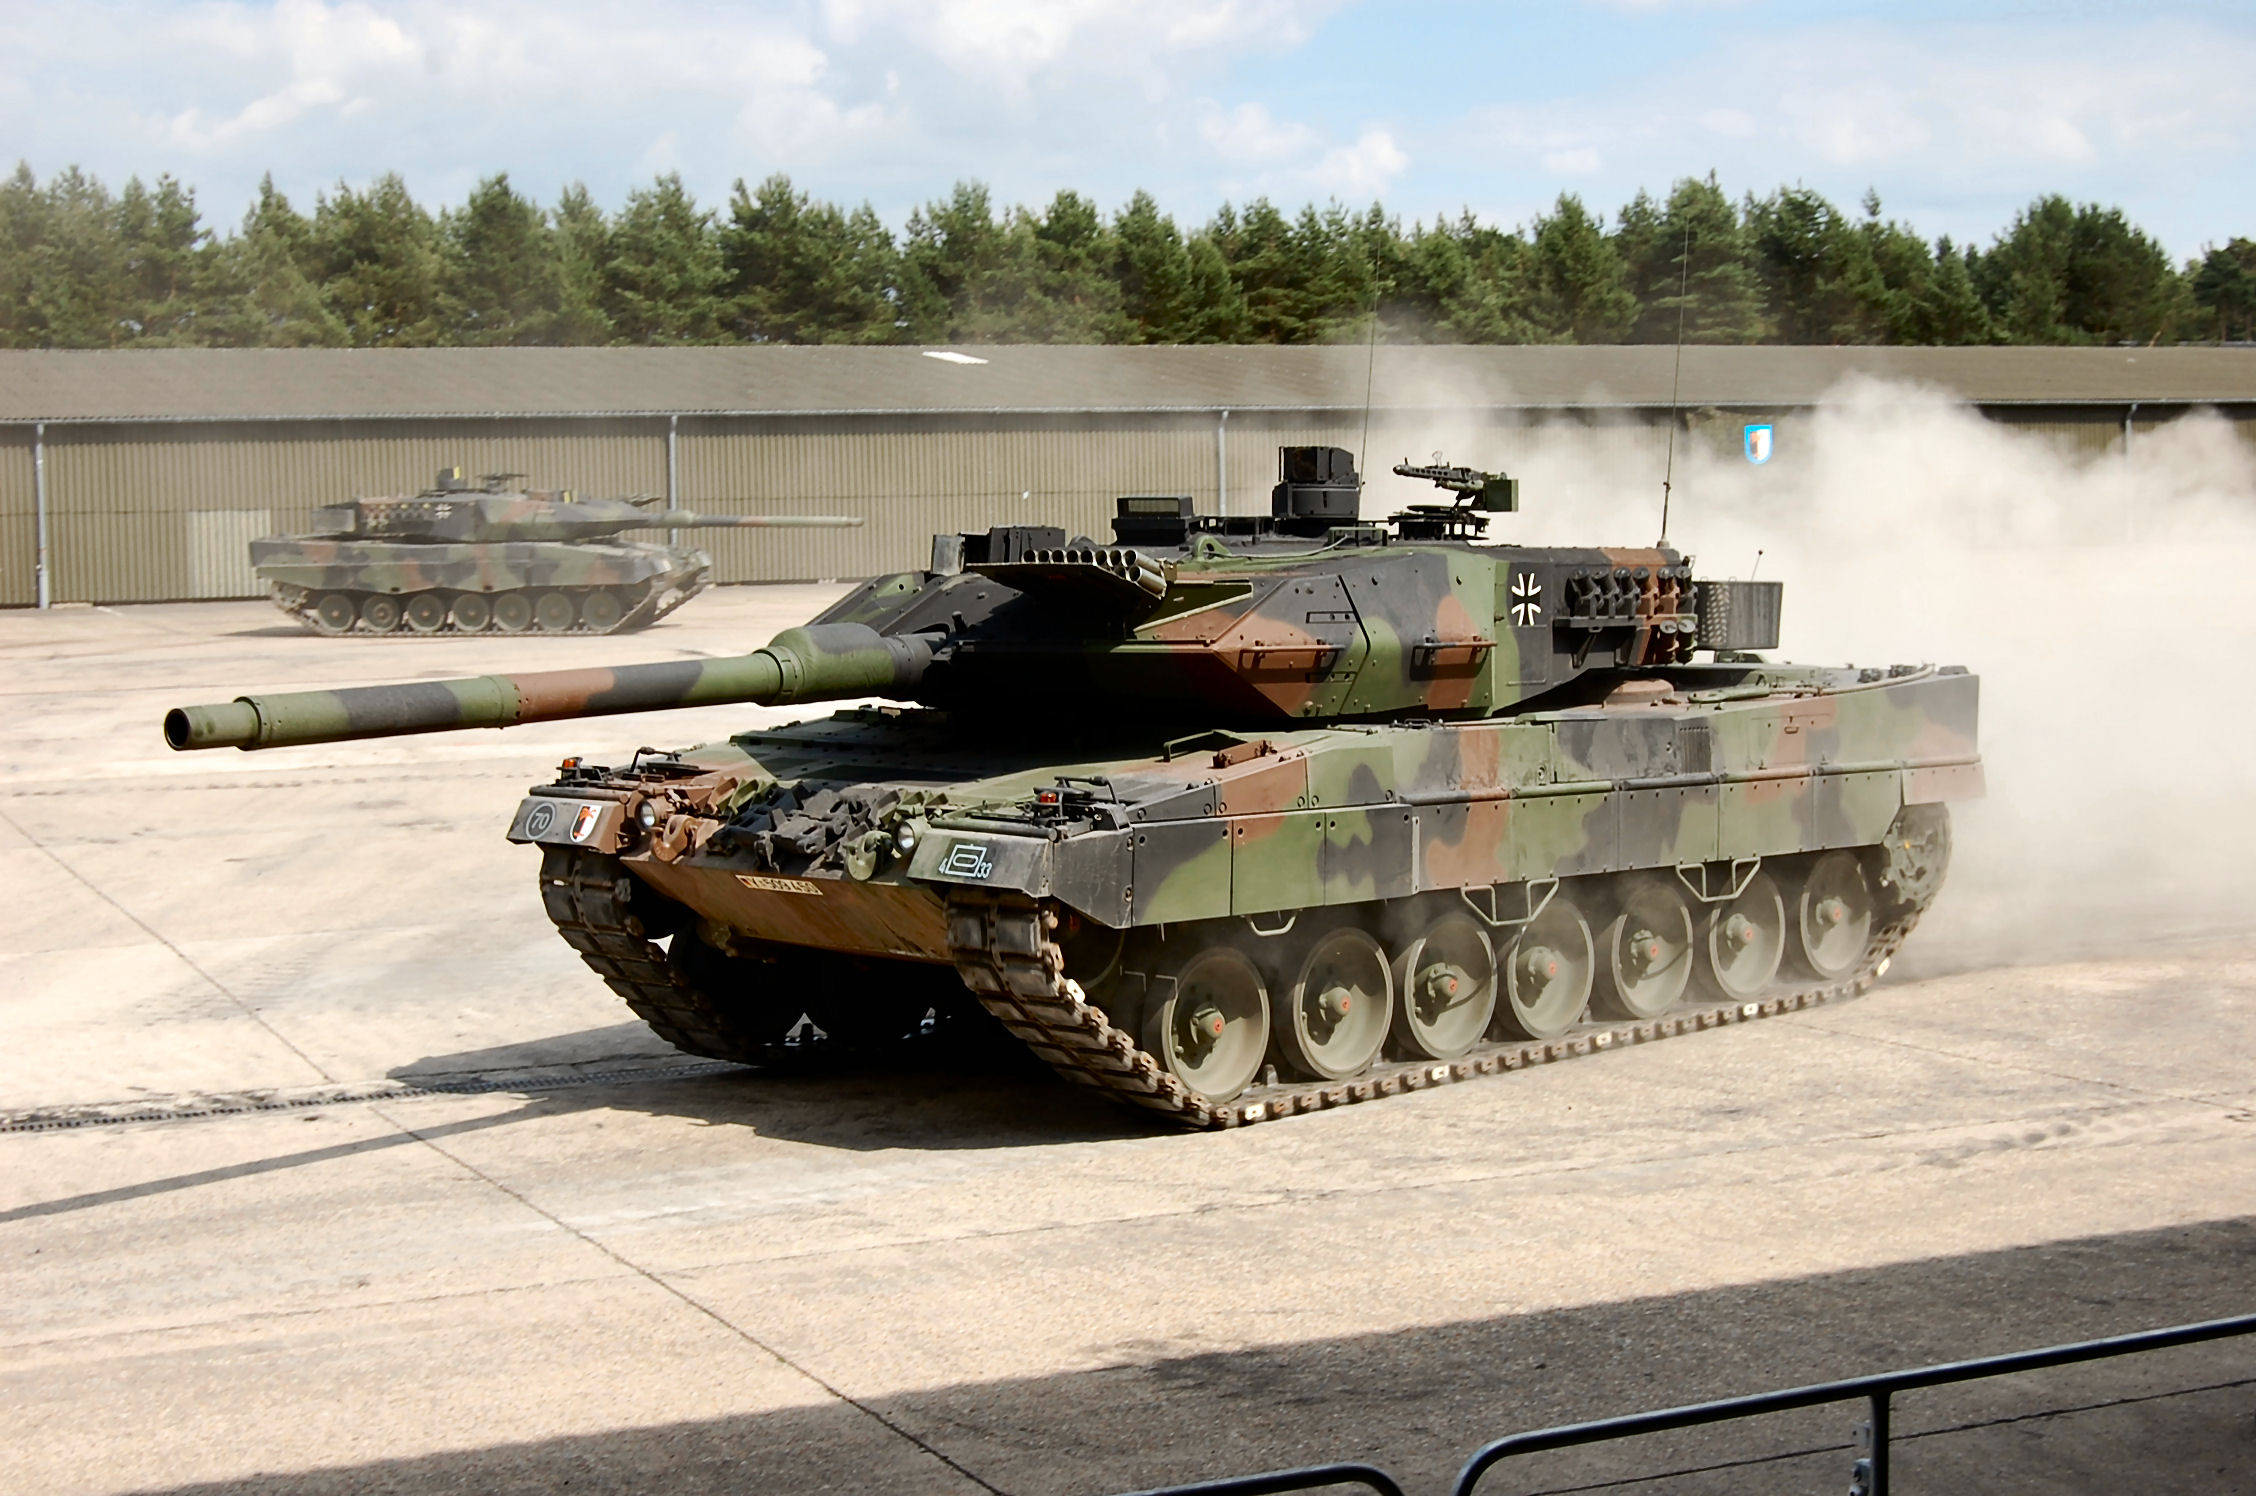 Βίντεο: Ουκρανικά άρματα μάχης Leopard 2A6 στην ανατολική Ουκρανία